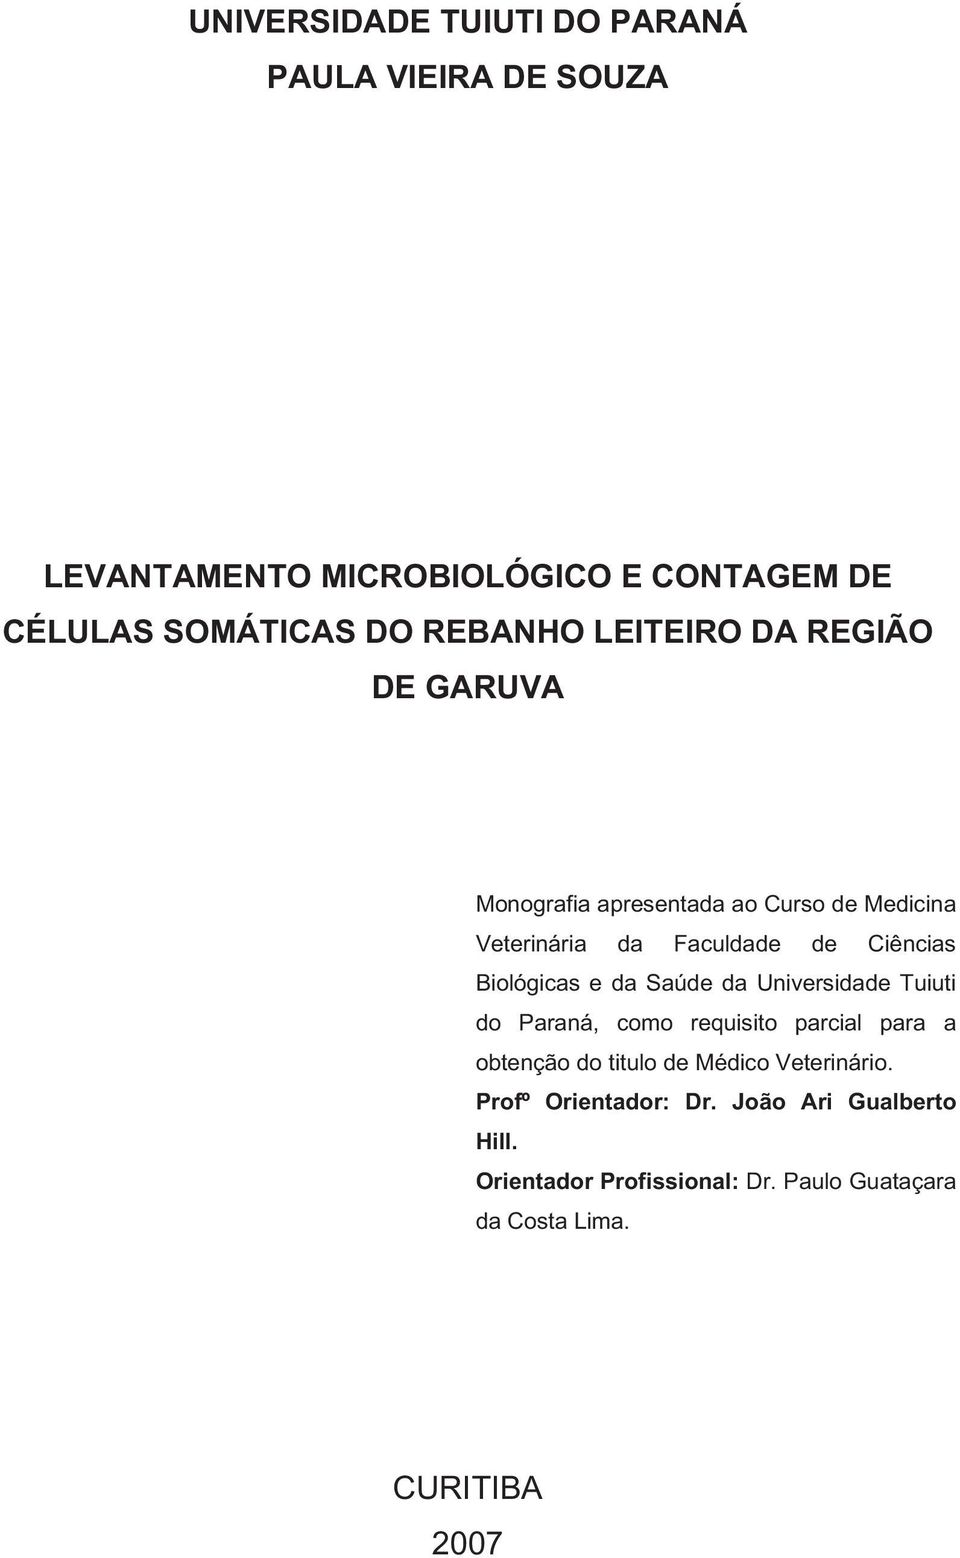 Biológicas e da Saúde da Universidade Tuiuti do Paraná, como requisito parcial para a obtenção do titulo de Médico